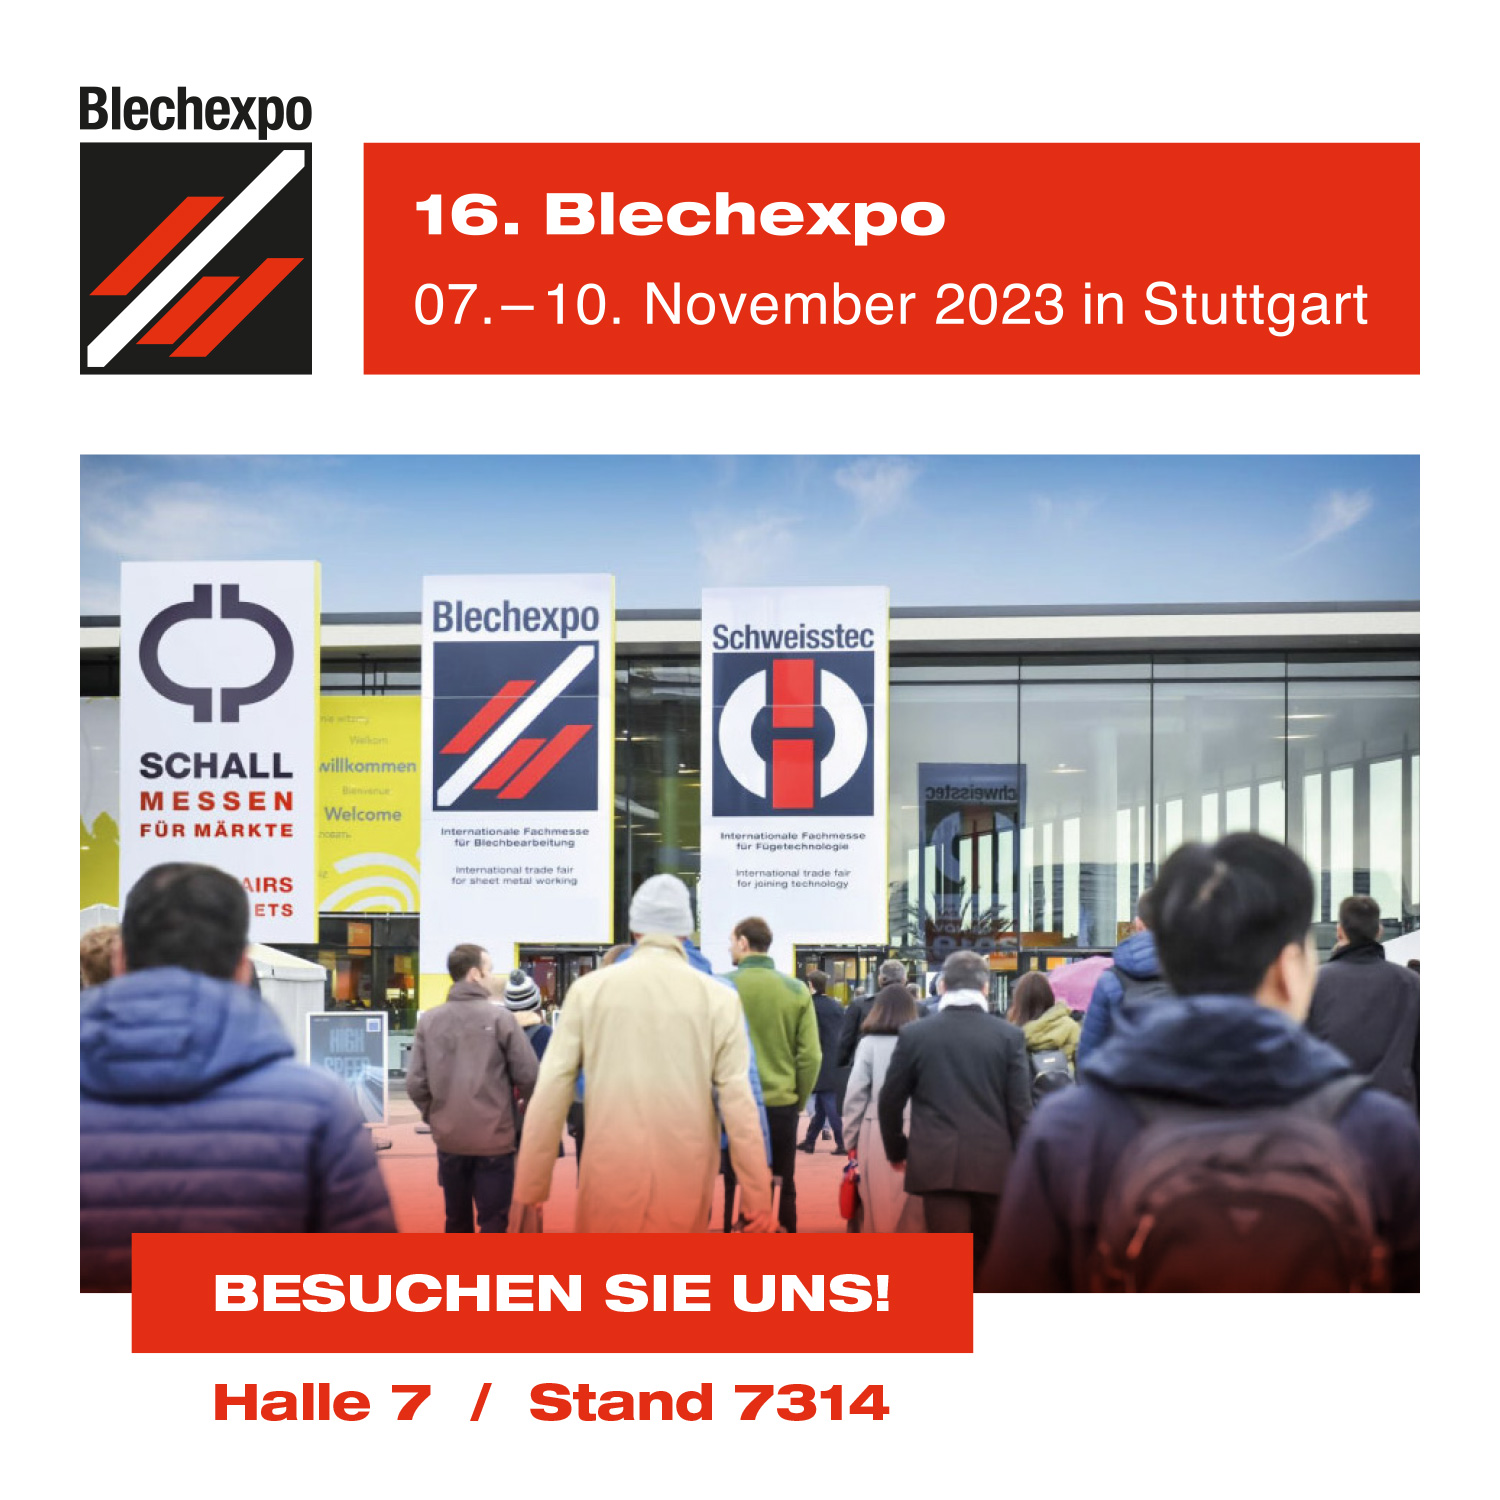 Besuchen Sie uns auf der 16. Blechexpo! 07.-10. November 2023 in Stuttgart, Halle 7 / Stand 7314